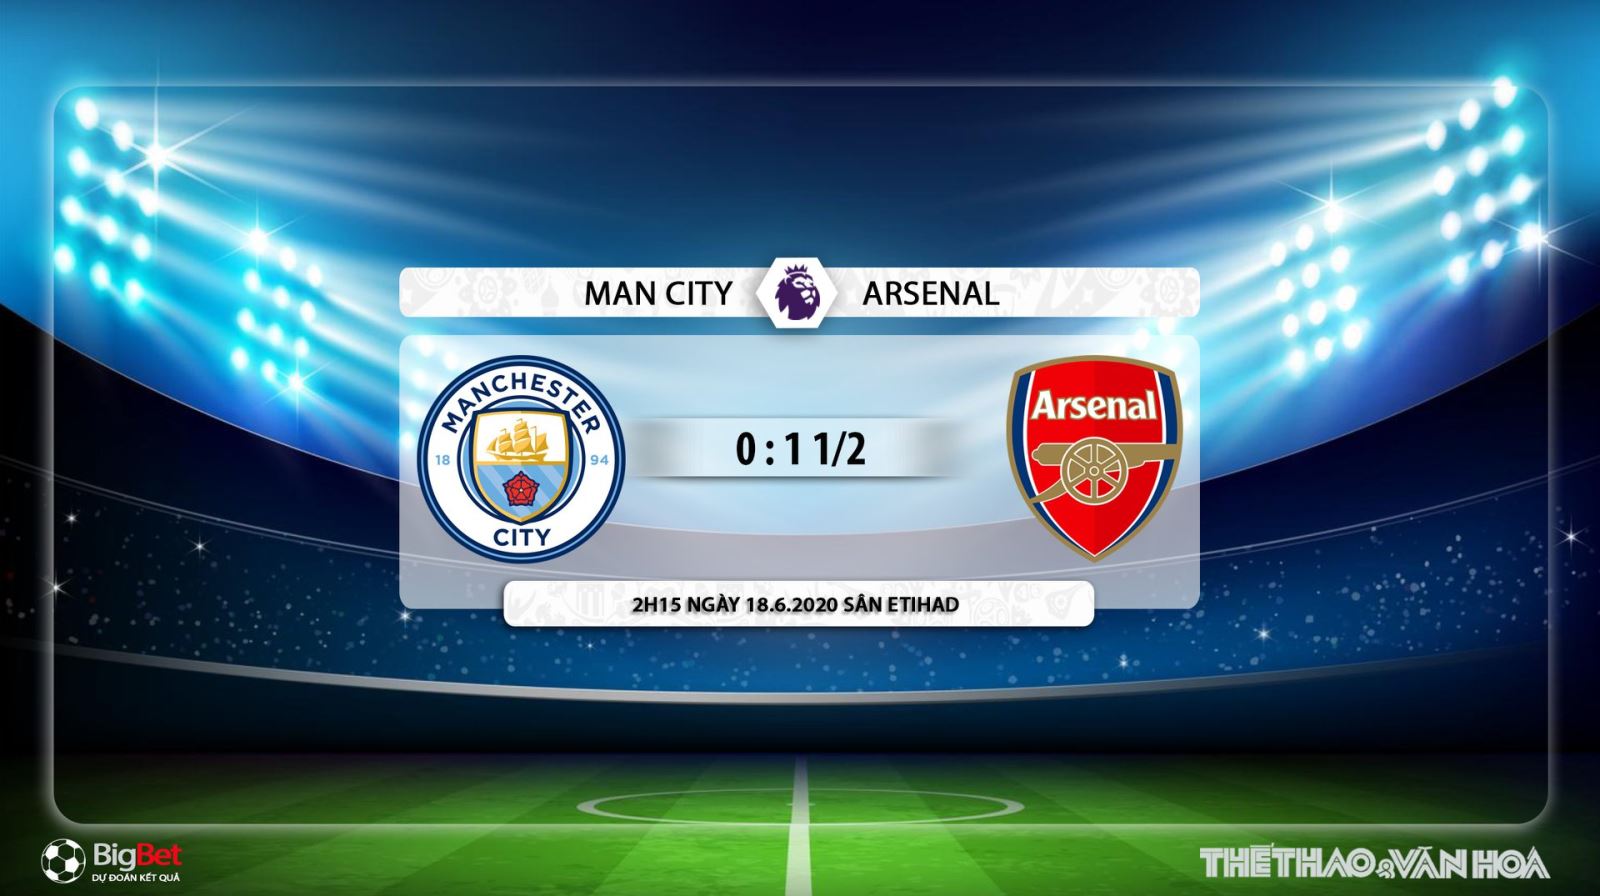 Man City vs Arsenal, Man City, Arsenal, dự đoán, kèo bóng đá, nhận định, trực tiếp bóng đá, bong da, lịch thi đấu